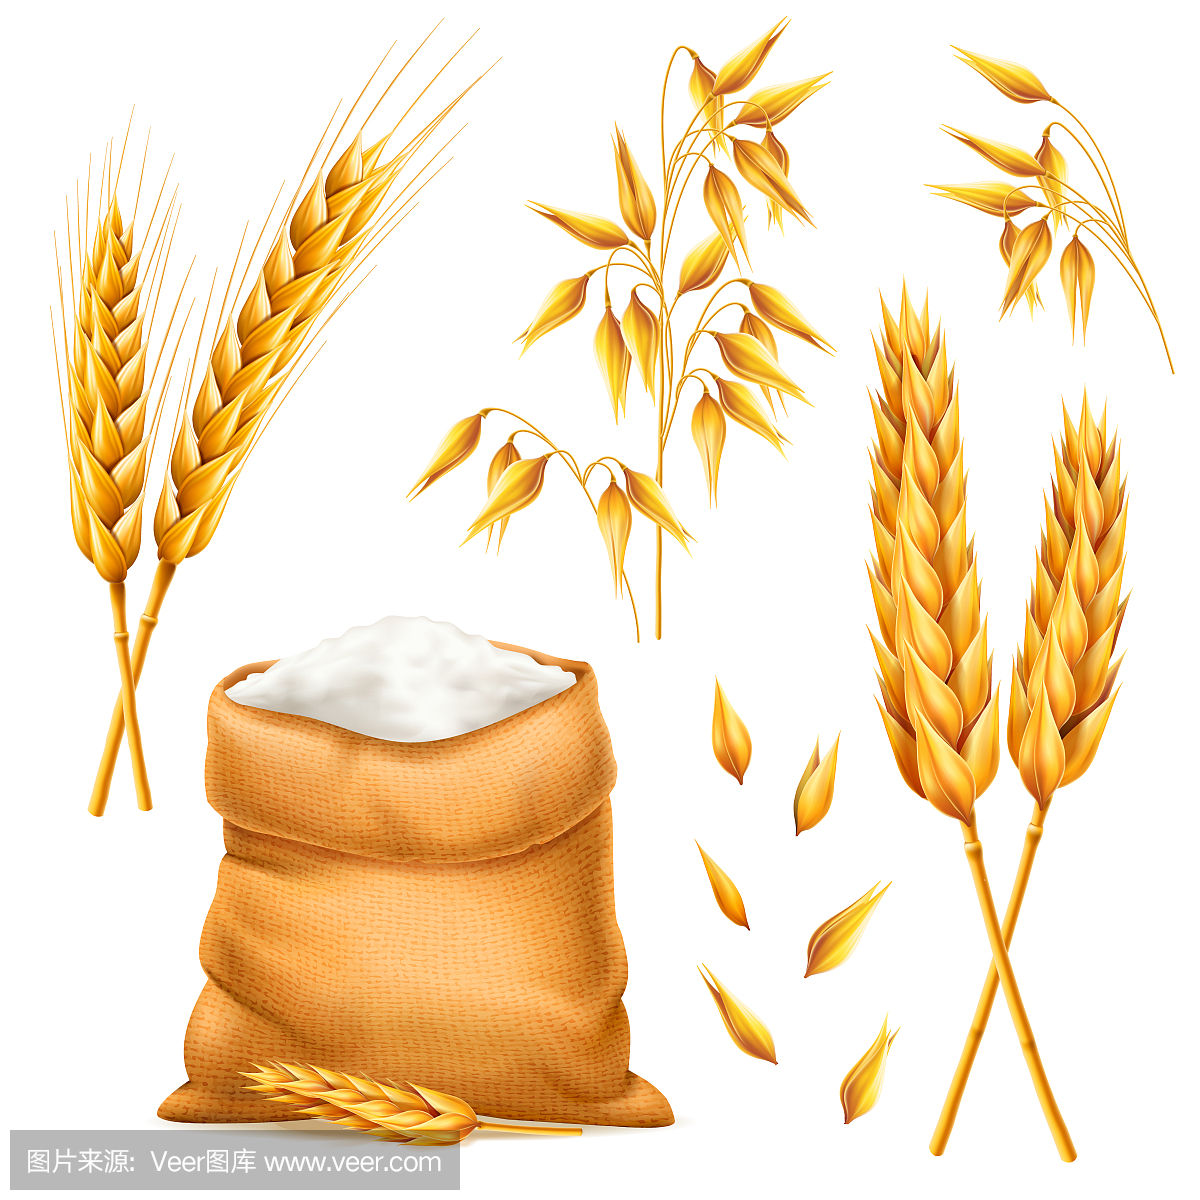 现实一束小麦,燕麦或大麦袋面粉孤立在白色背